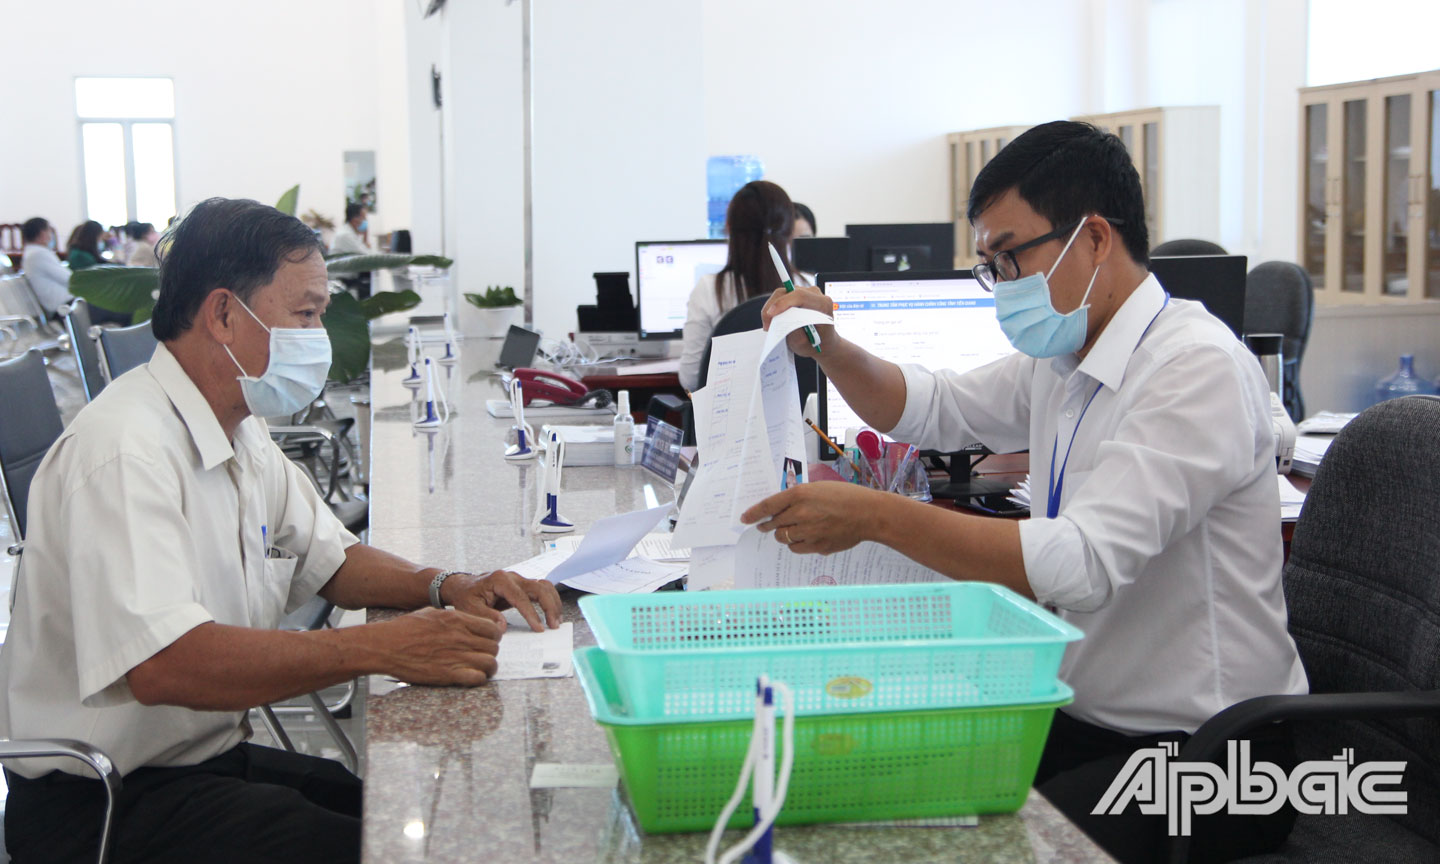 Trung tâm Phục vụ hành chính công tỉnh Tiền Giang tạm ngưng tiếp nhận hồ sơ trực tiếp từ ngày 30-6